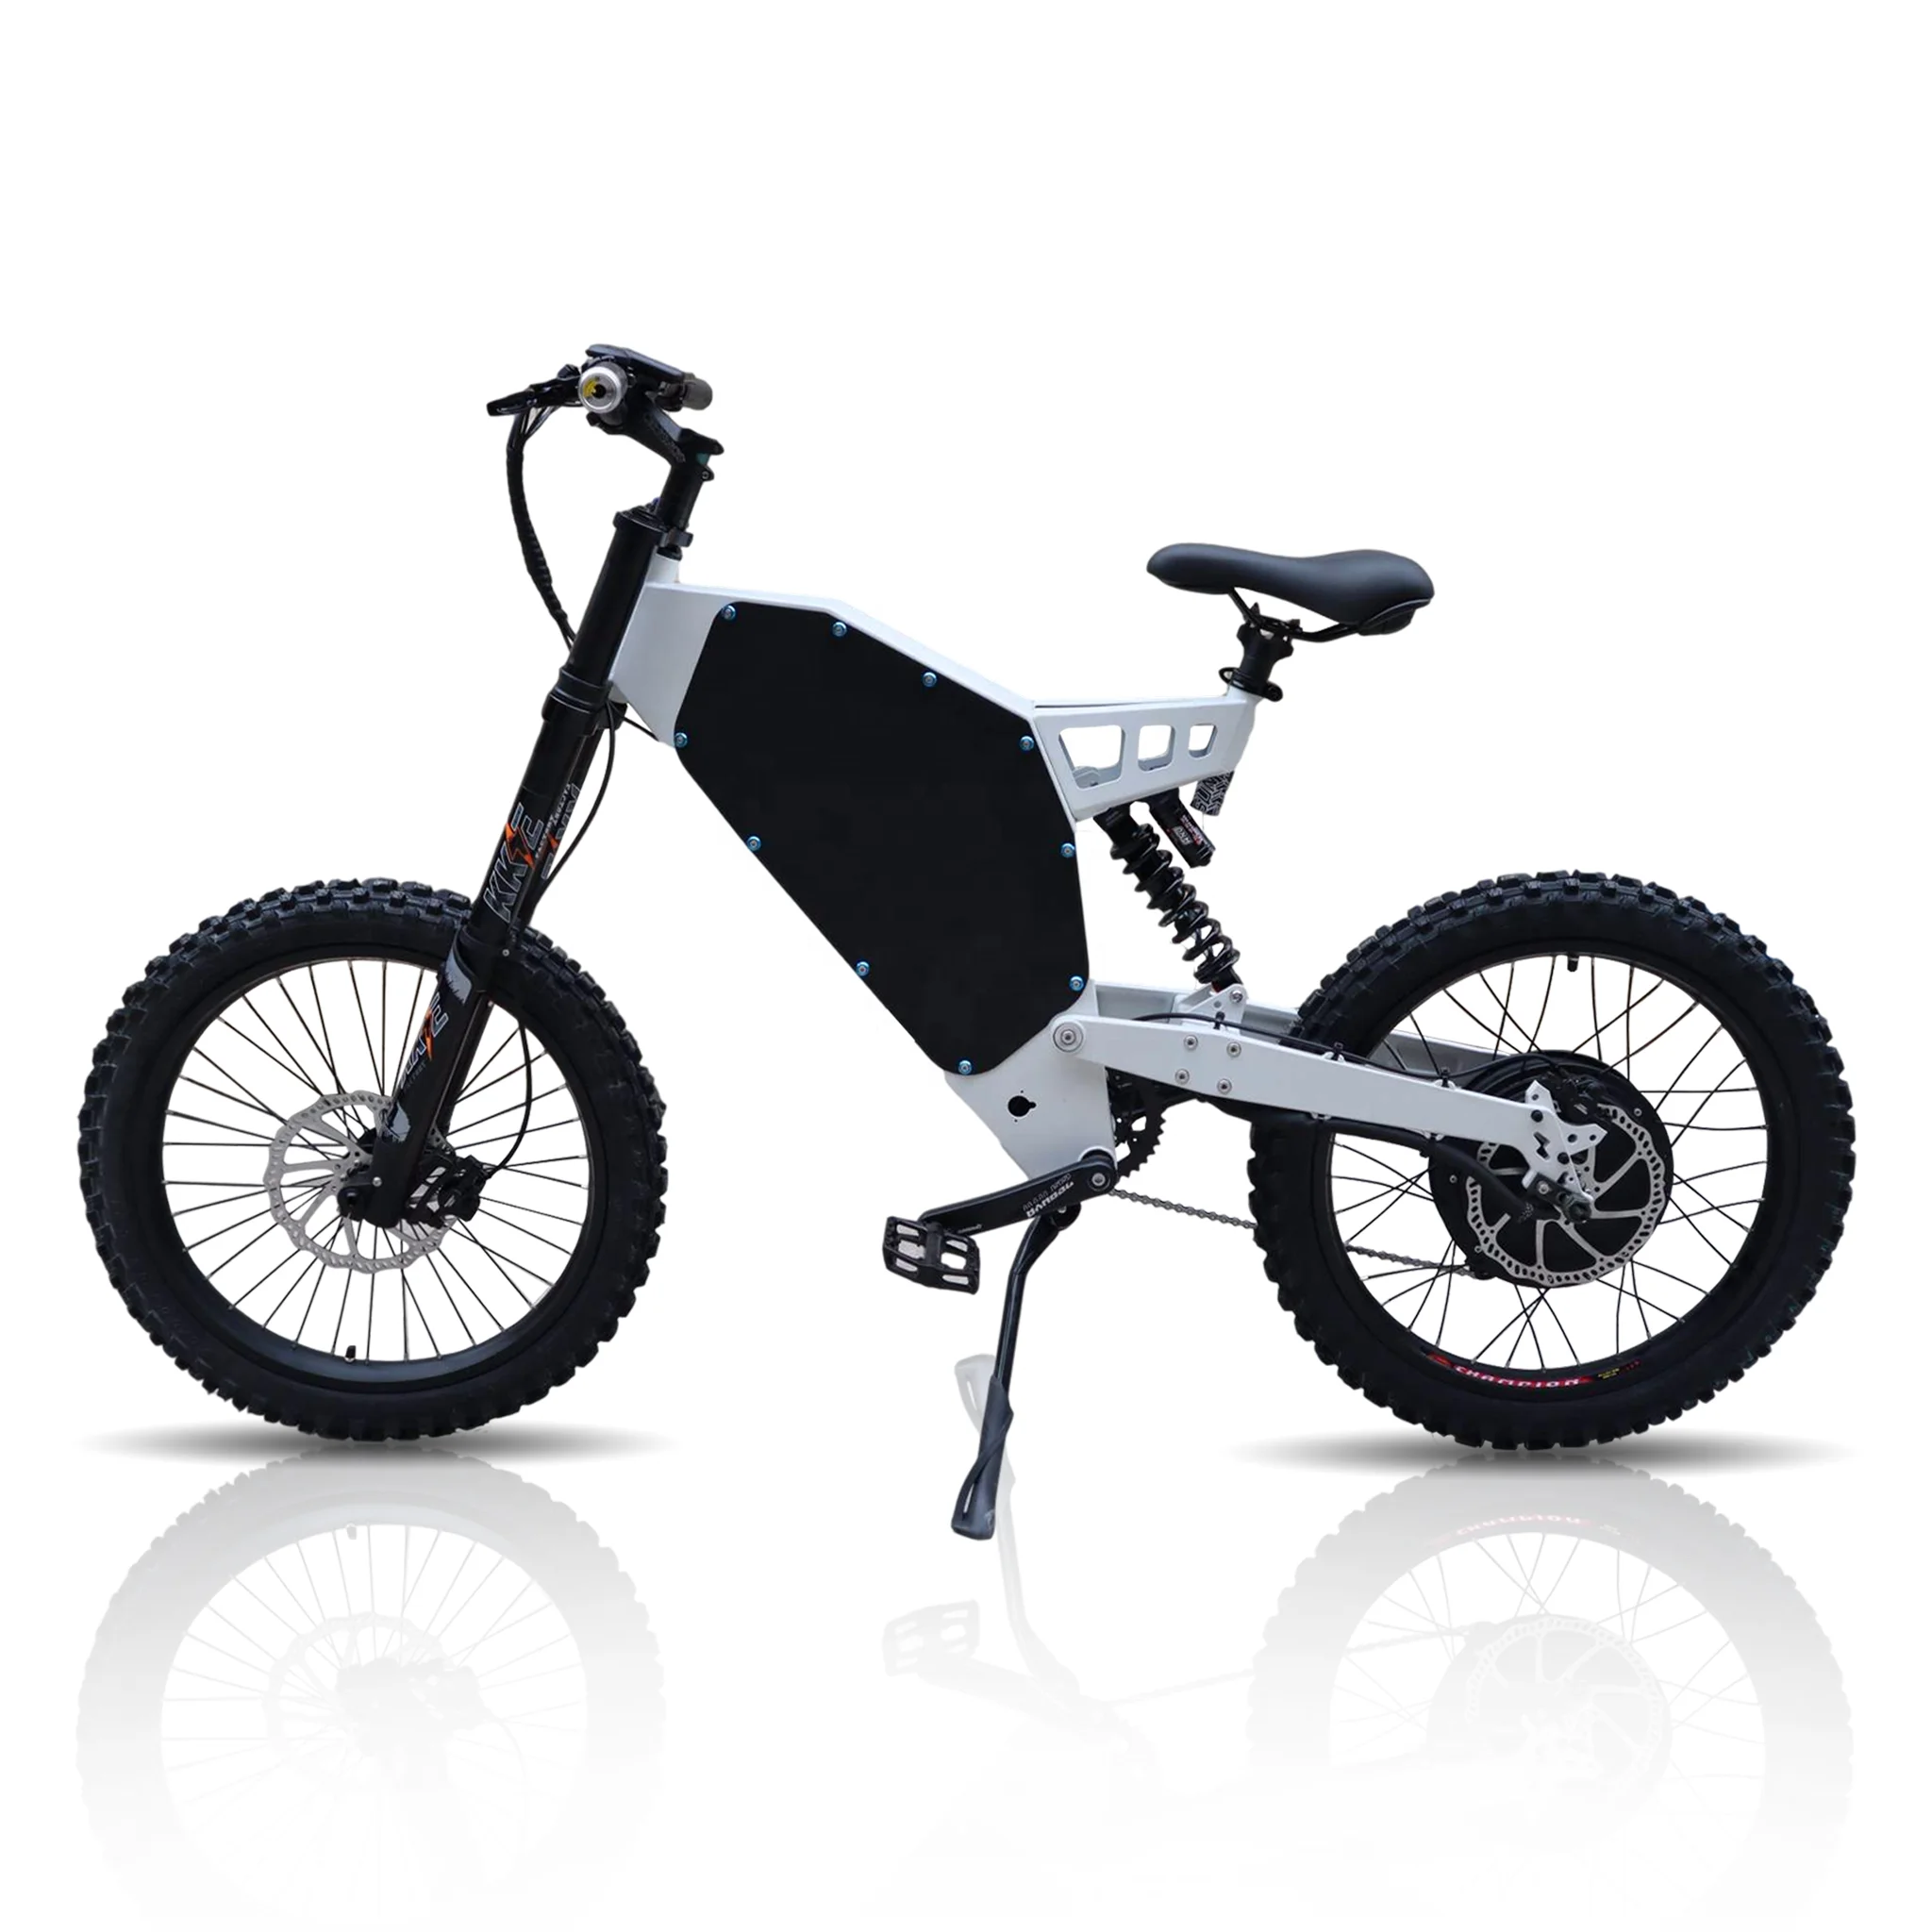 

2021 hot selling 72v 26-41ah electric dirt bike for adults 3000w/5000w/8000w enduro ebike electric bicycle